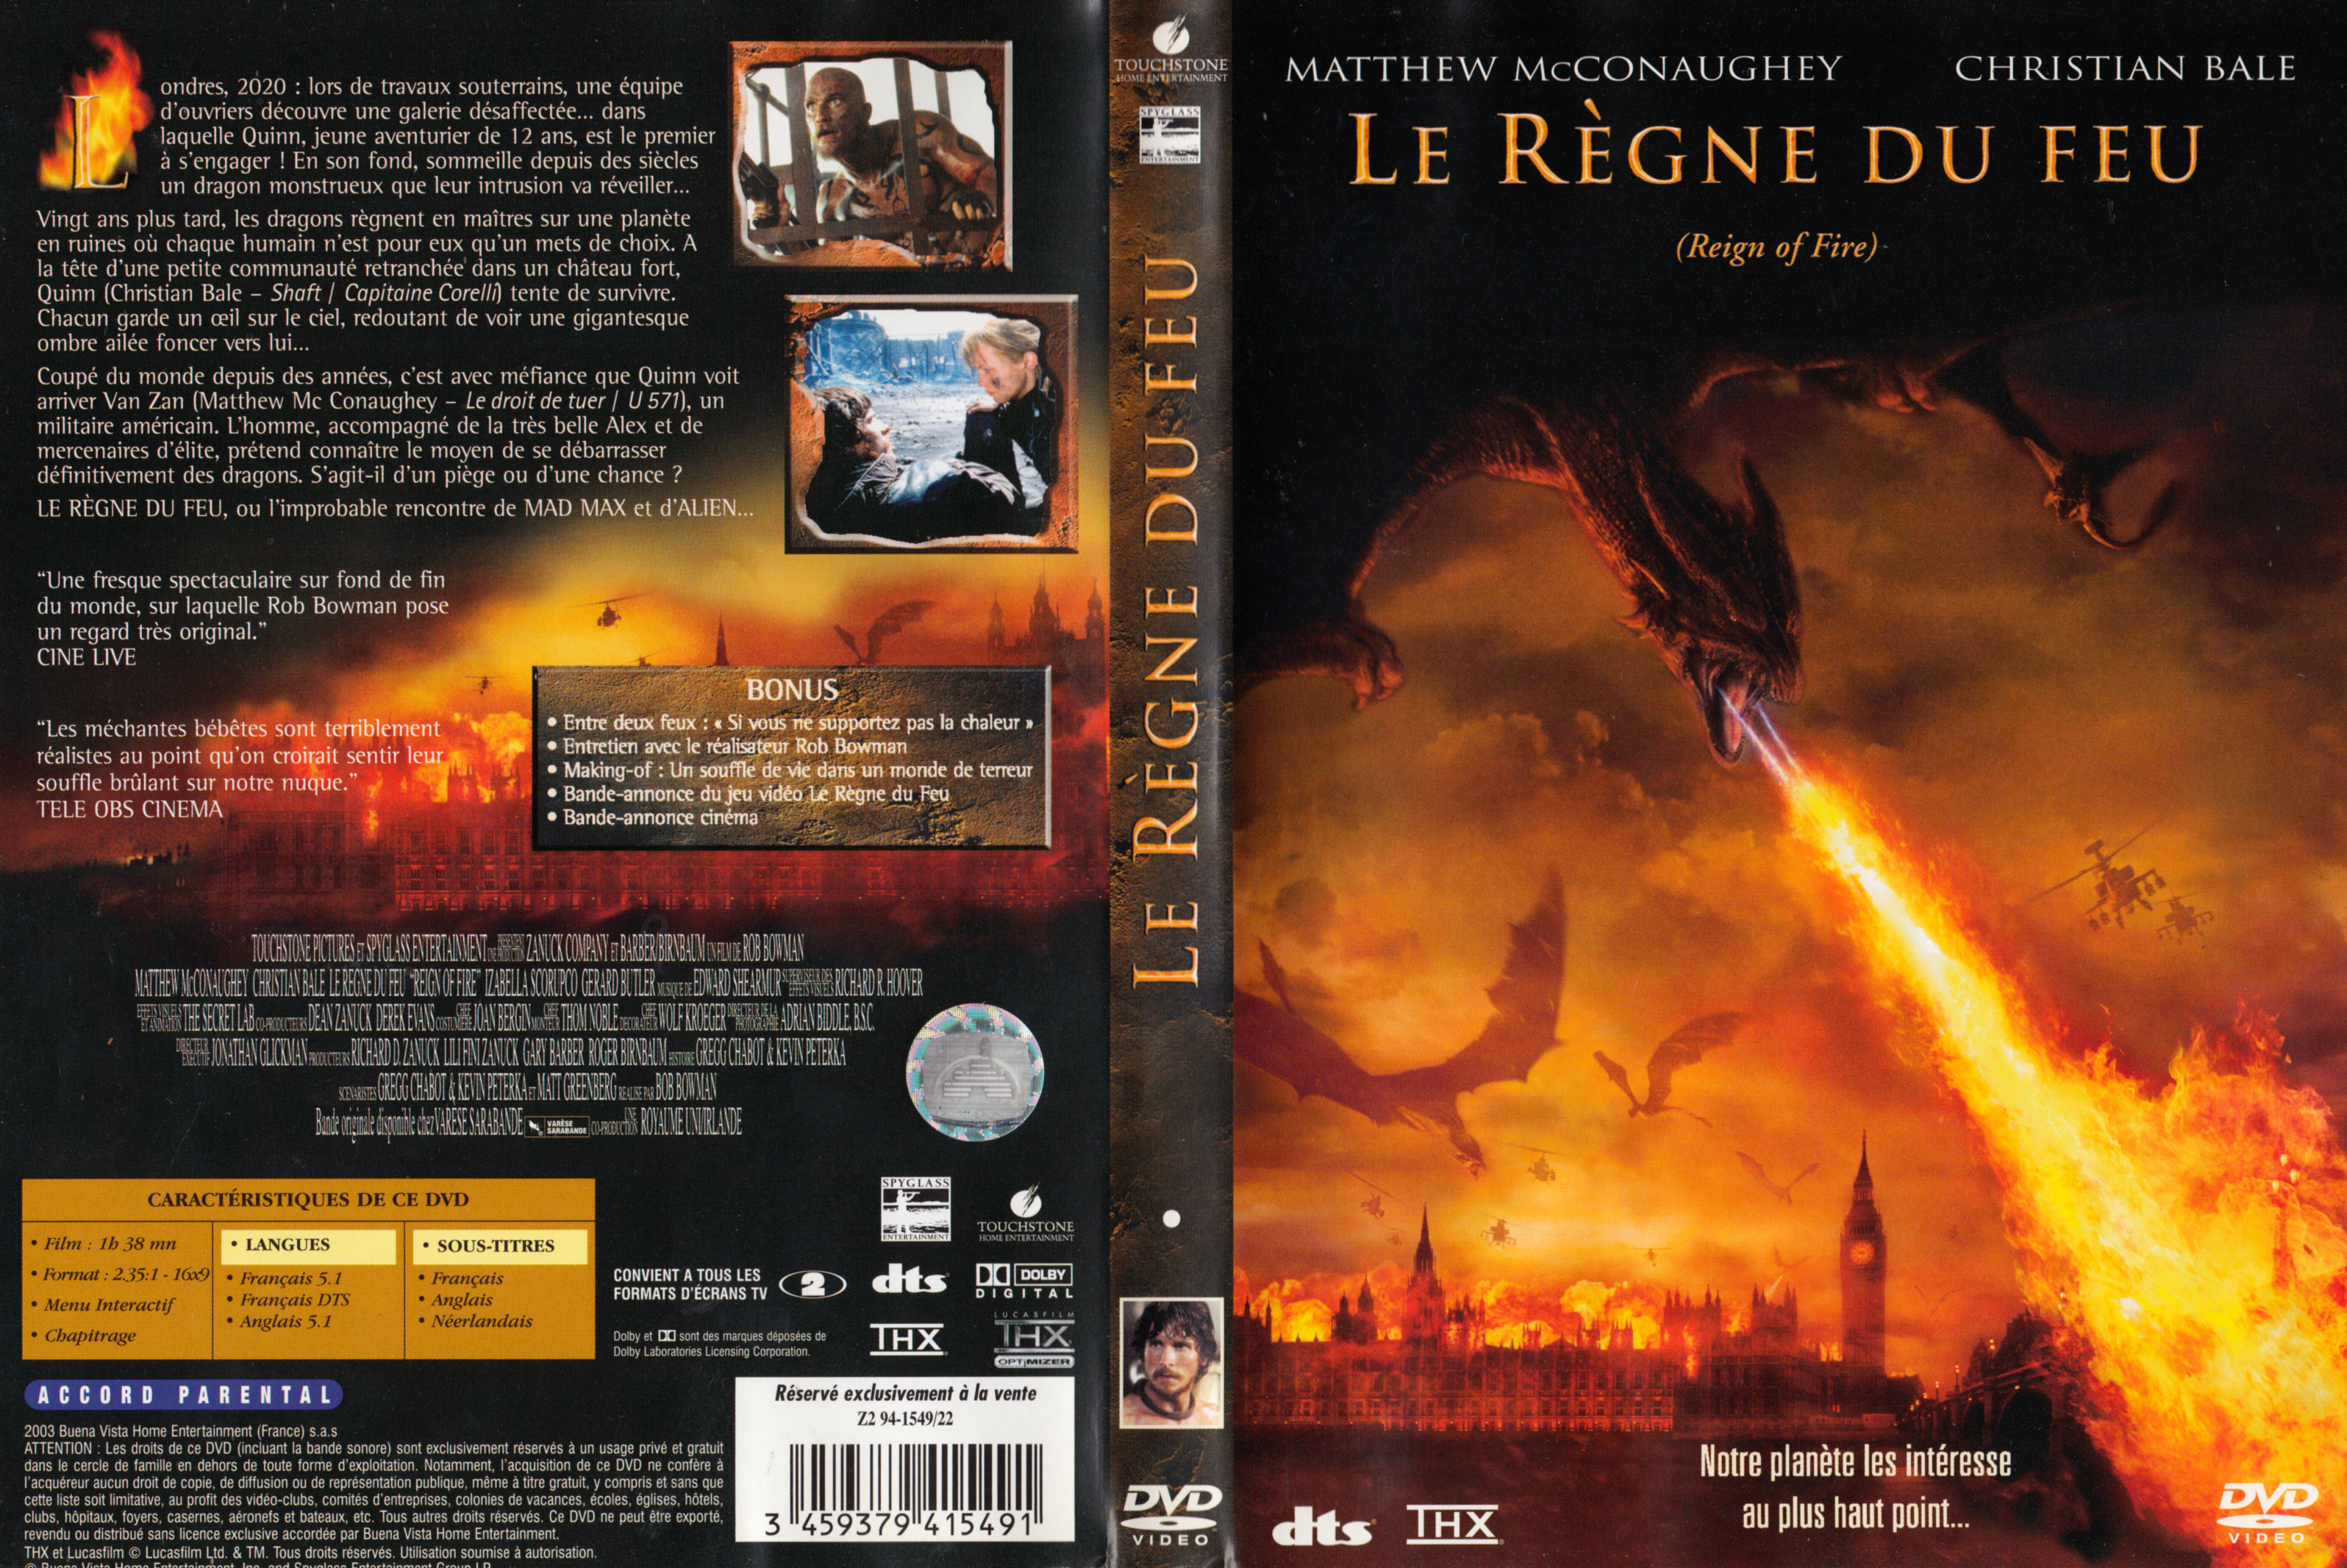 Jaquette DVD Le rgne du feu v2